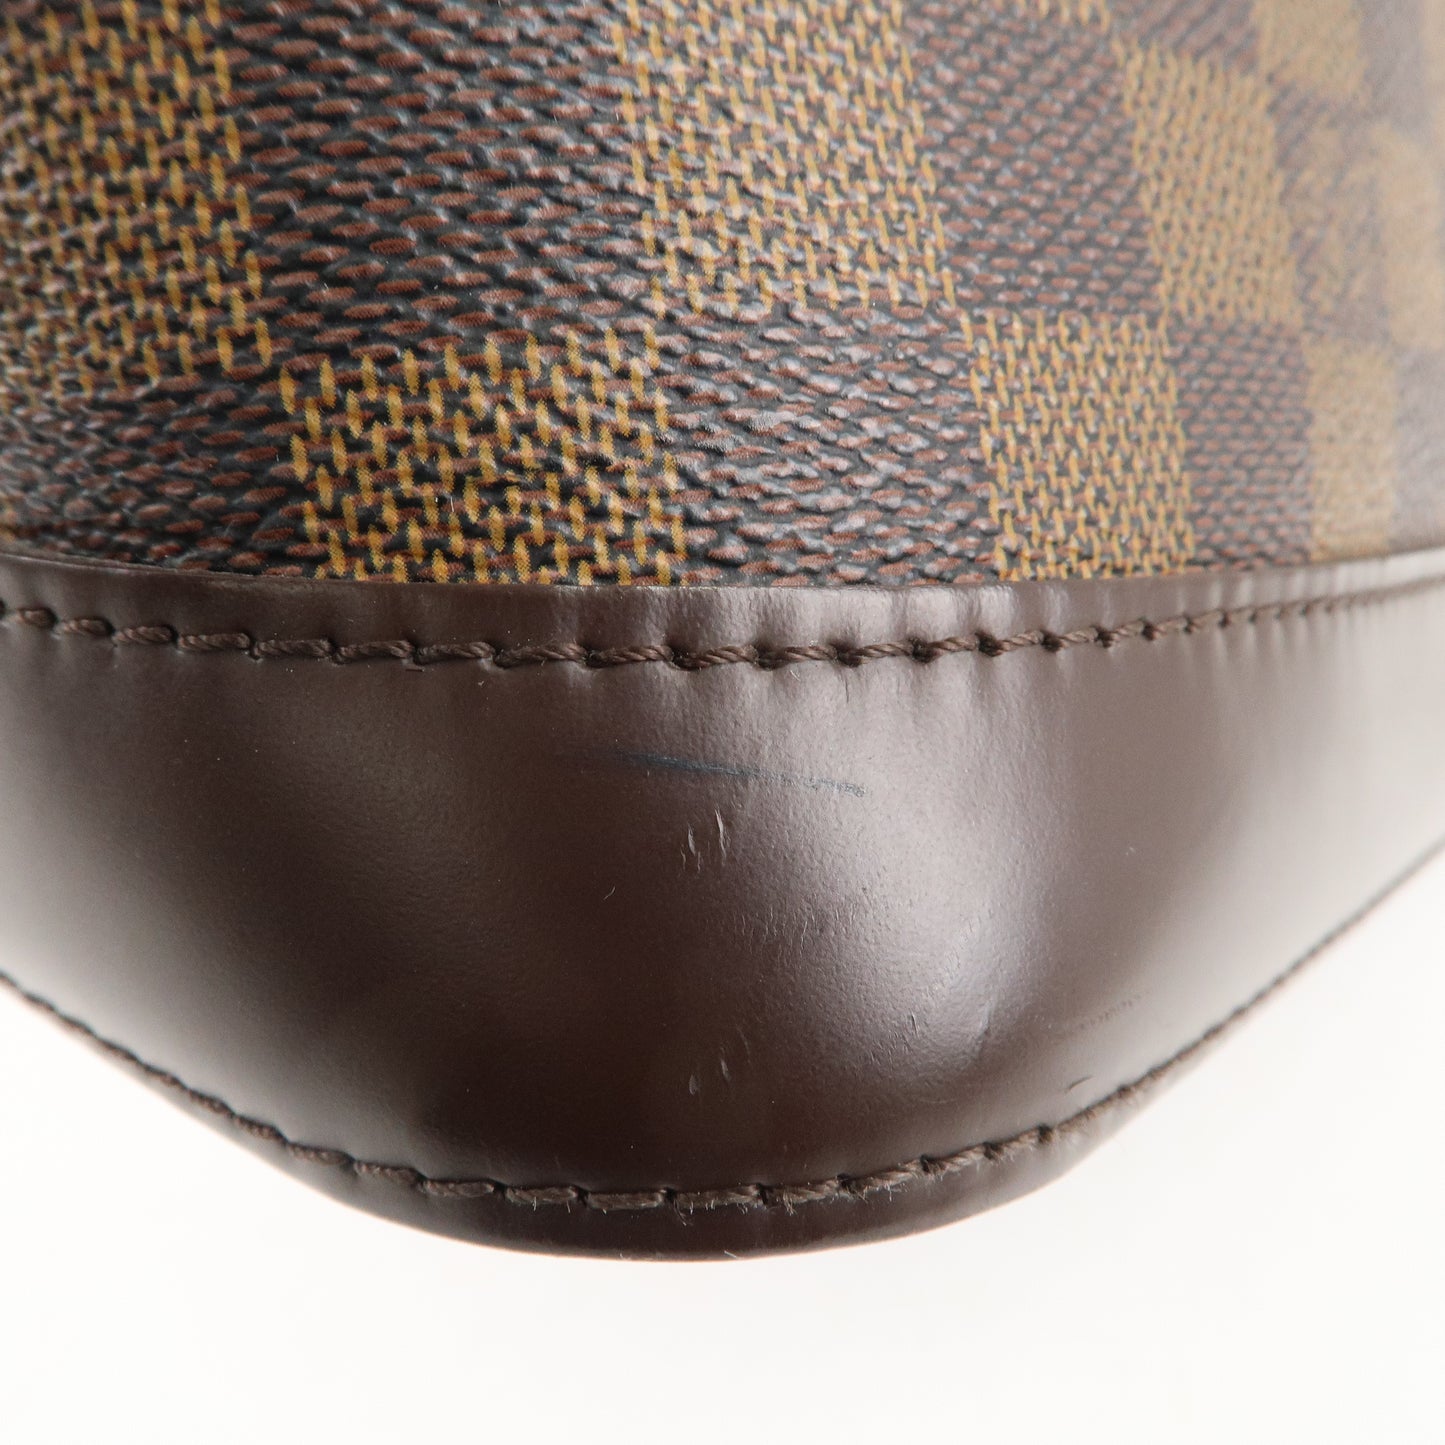 Louis Vuitton Damier Alma Hand Bag Brown Brown N51131